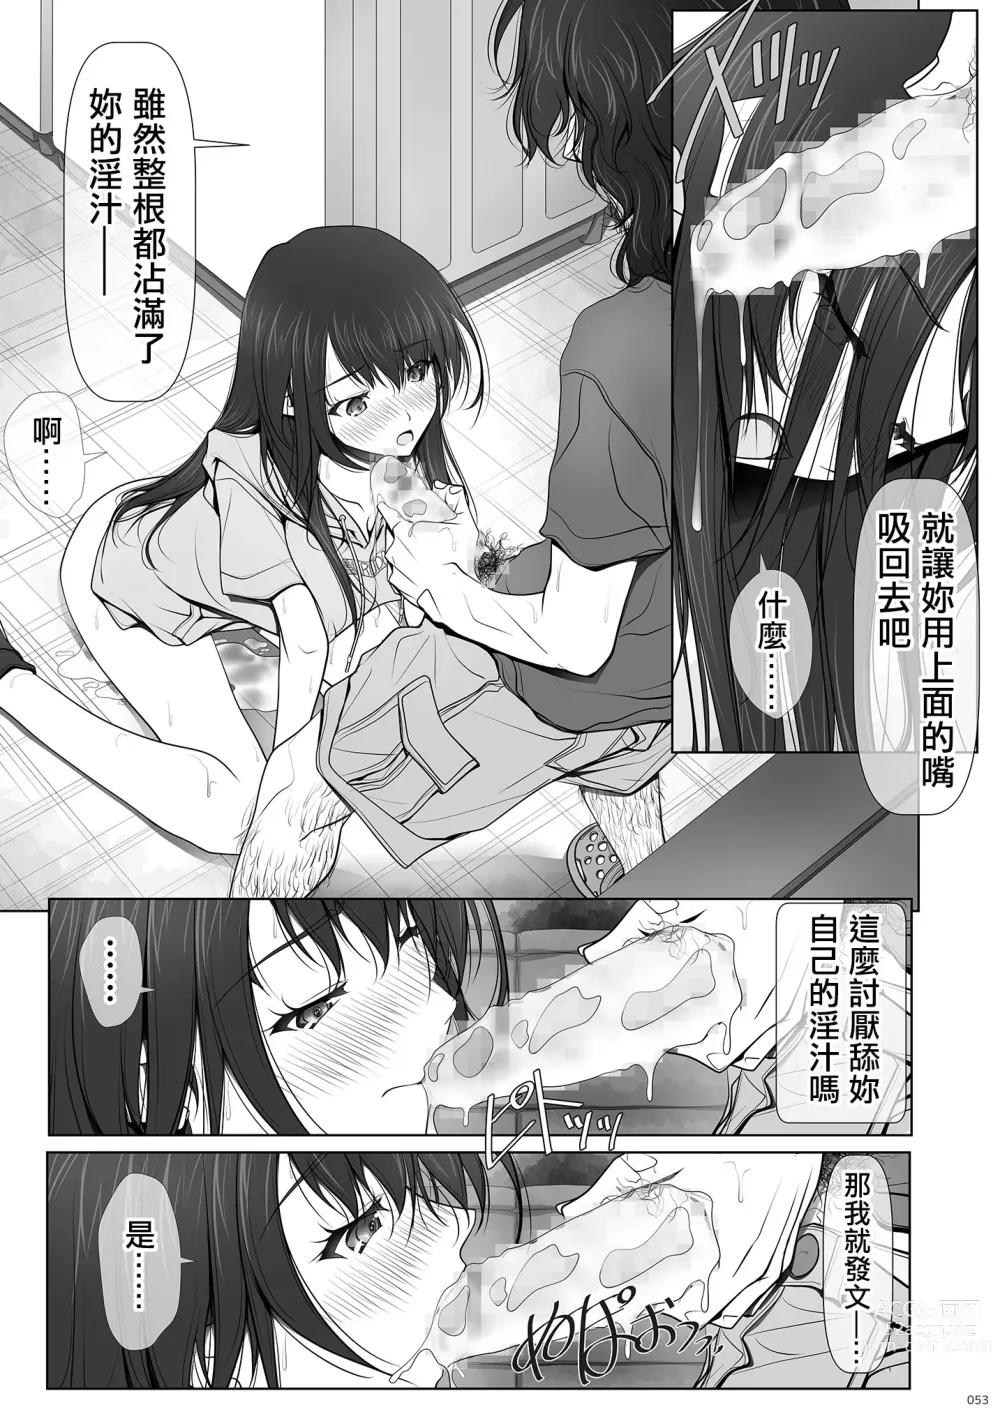 Page 53 of doujinshi 彼女がパンツを穿かない理由｜她不穿內褲的理由